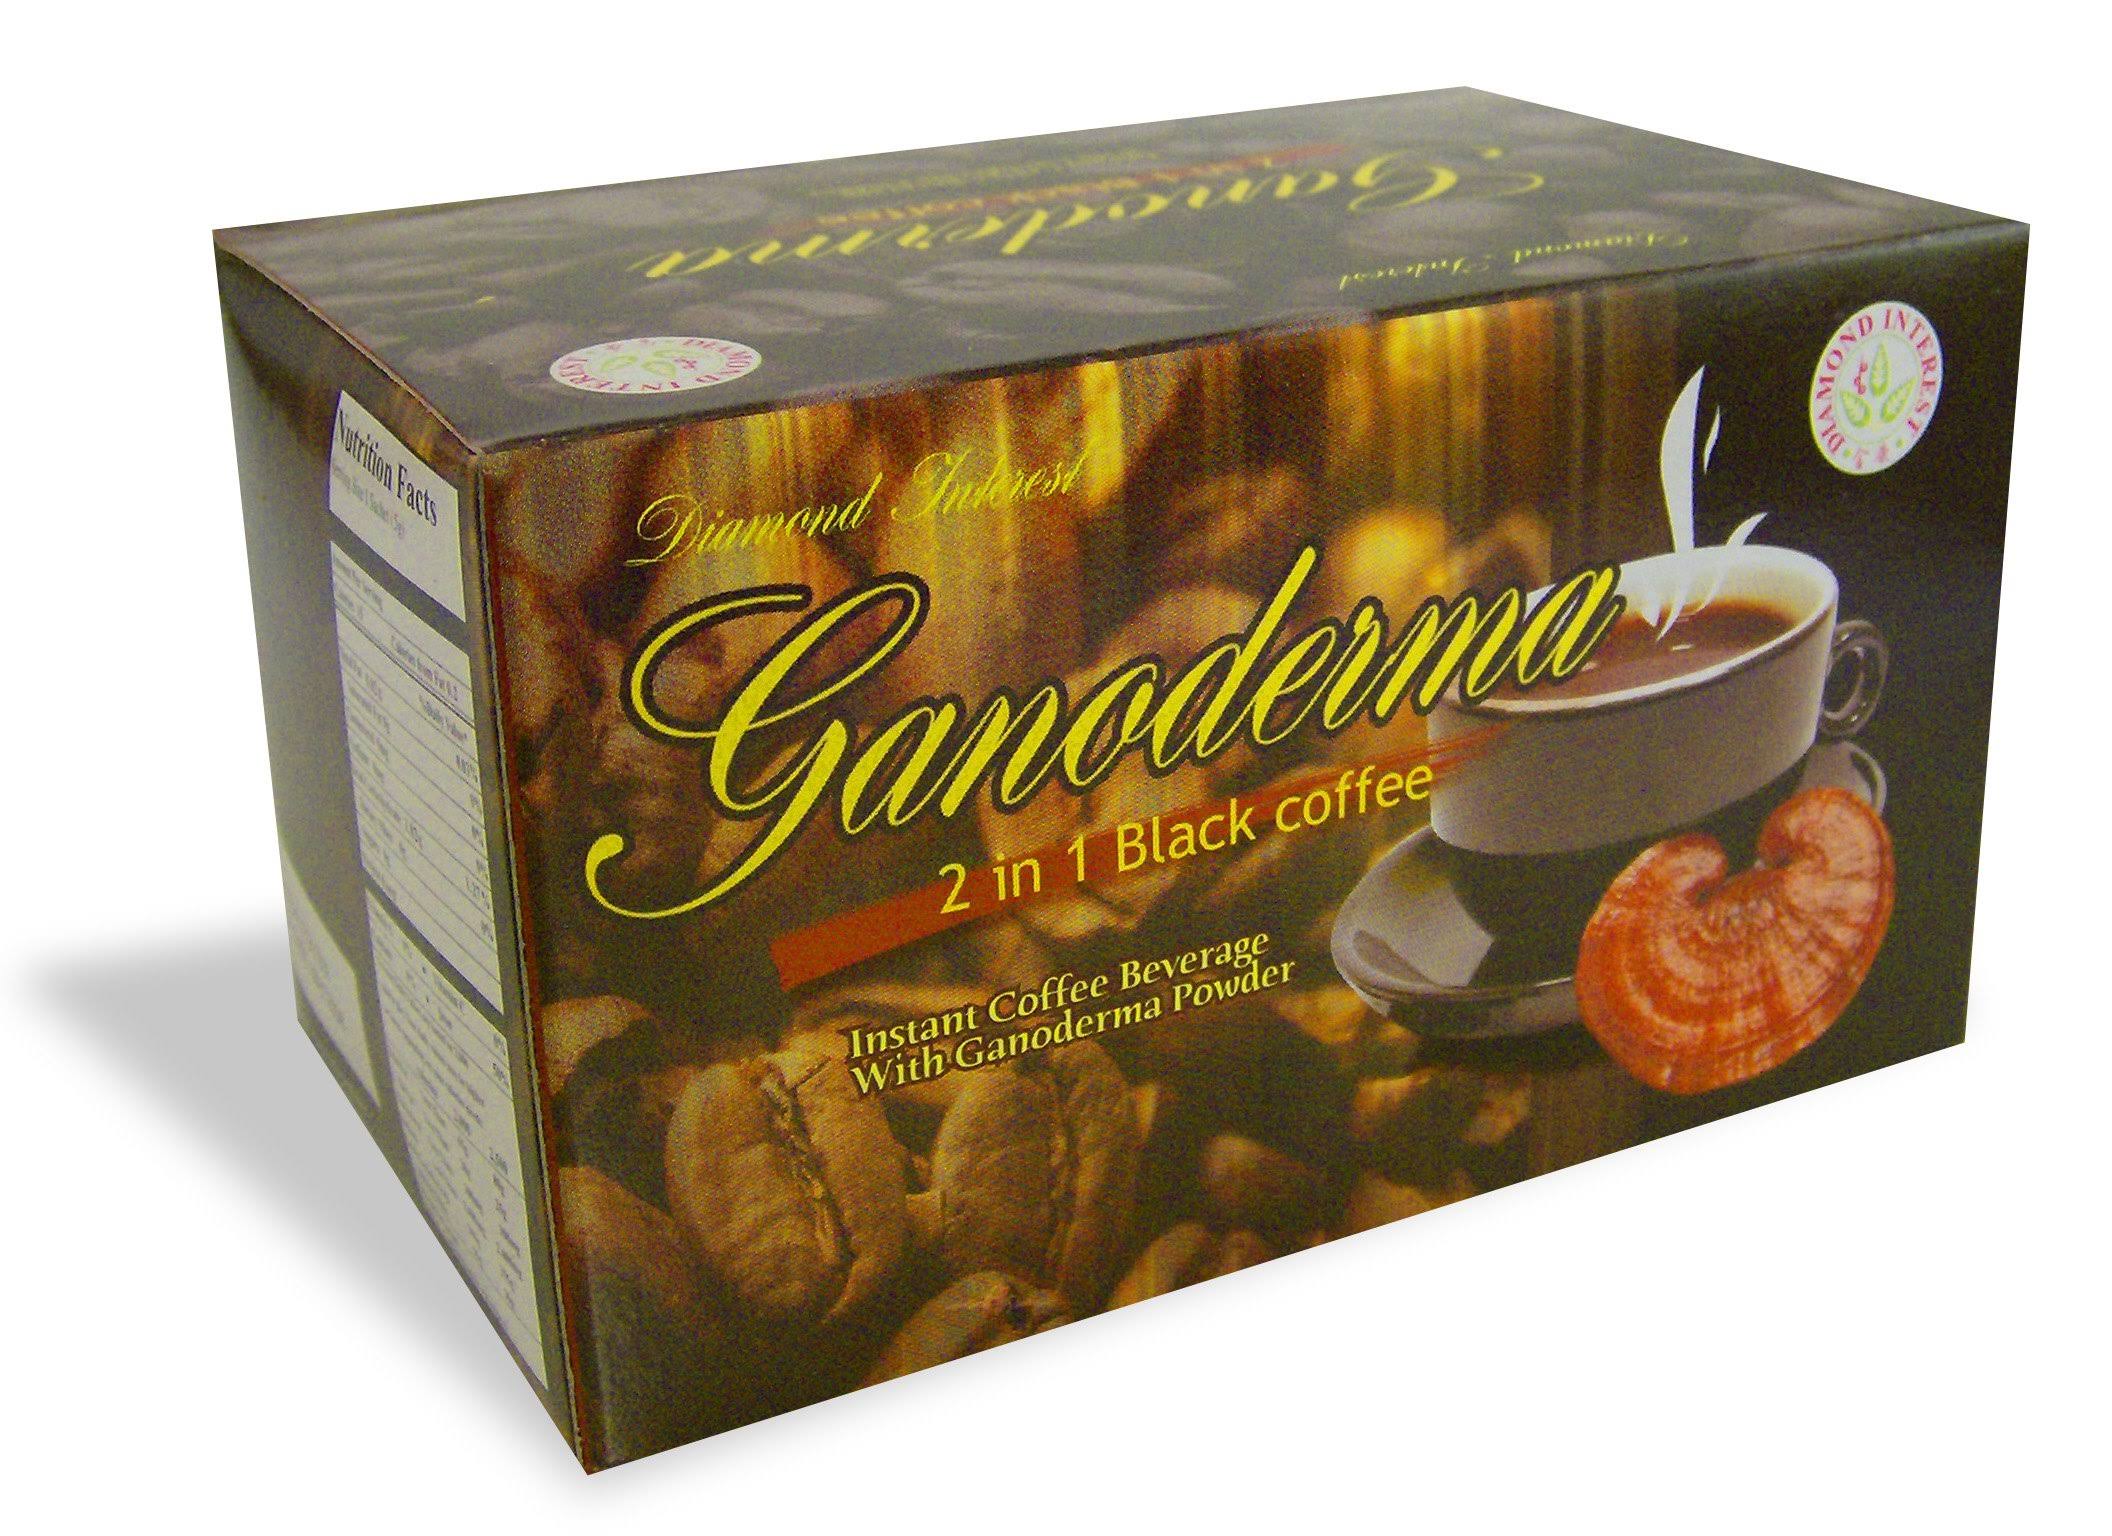 Ganoderma 2 in 1 Black Coffee - 1550 MG of Ganoderma per Sachet